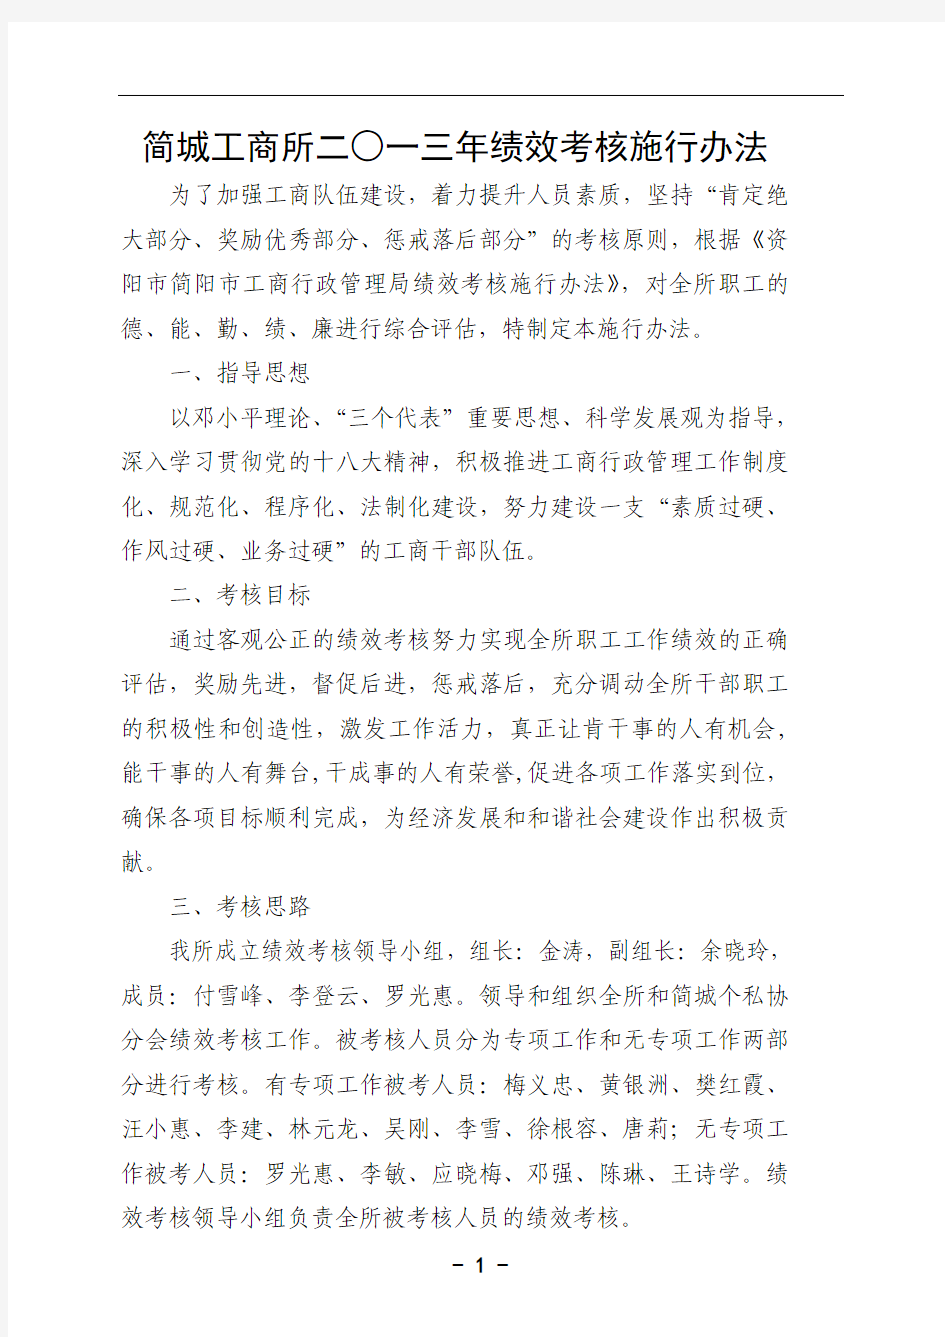 简城工商所2013年绩效考核施行办法.2